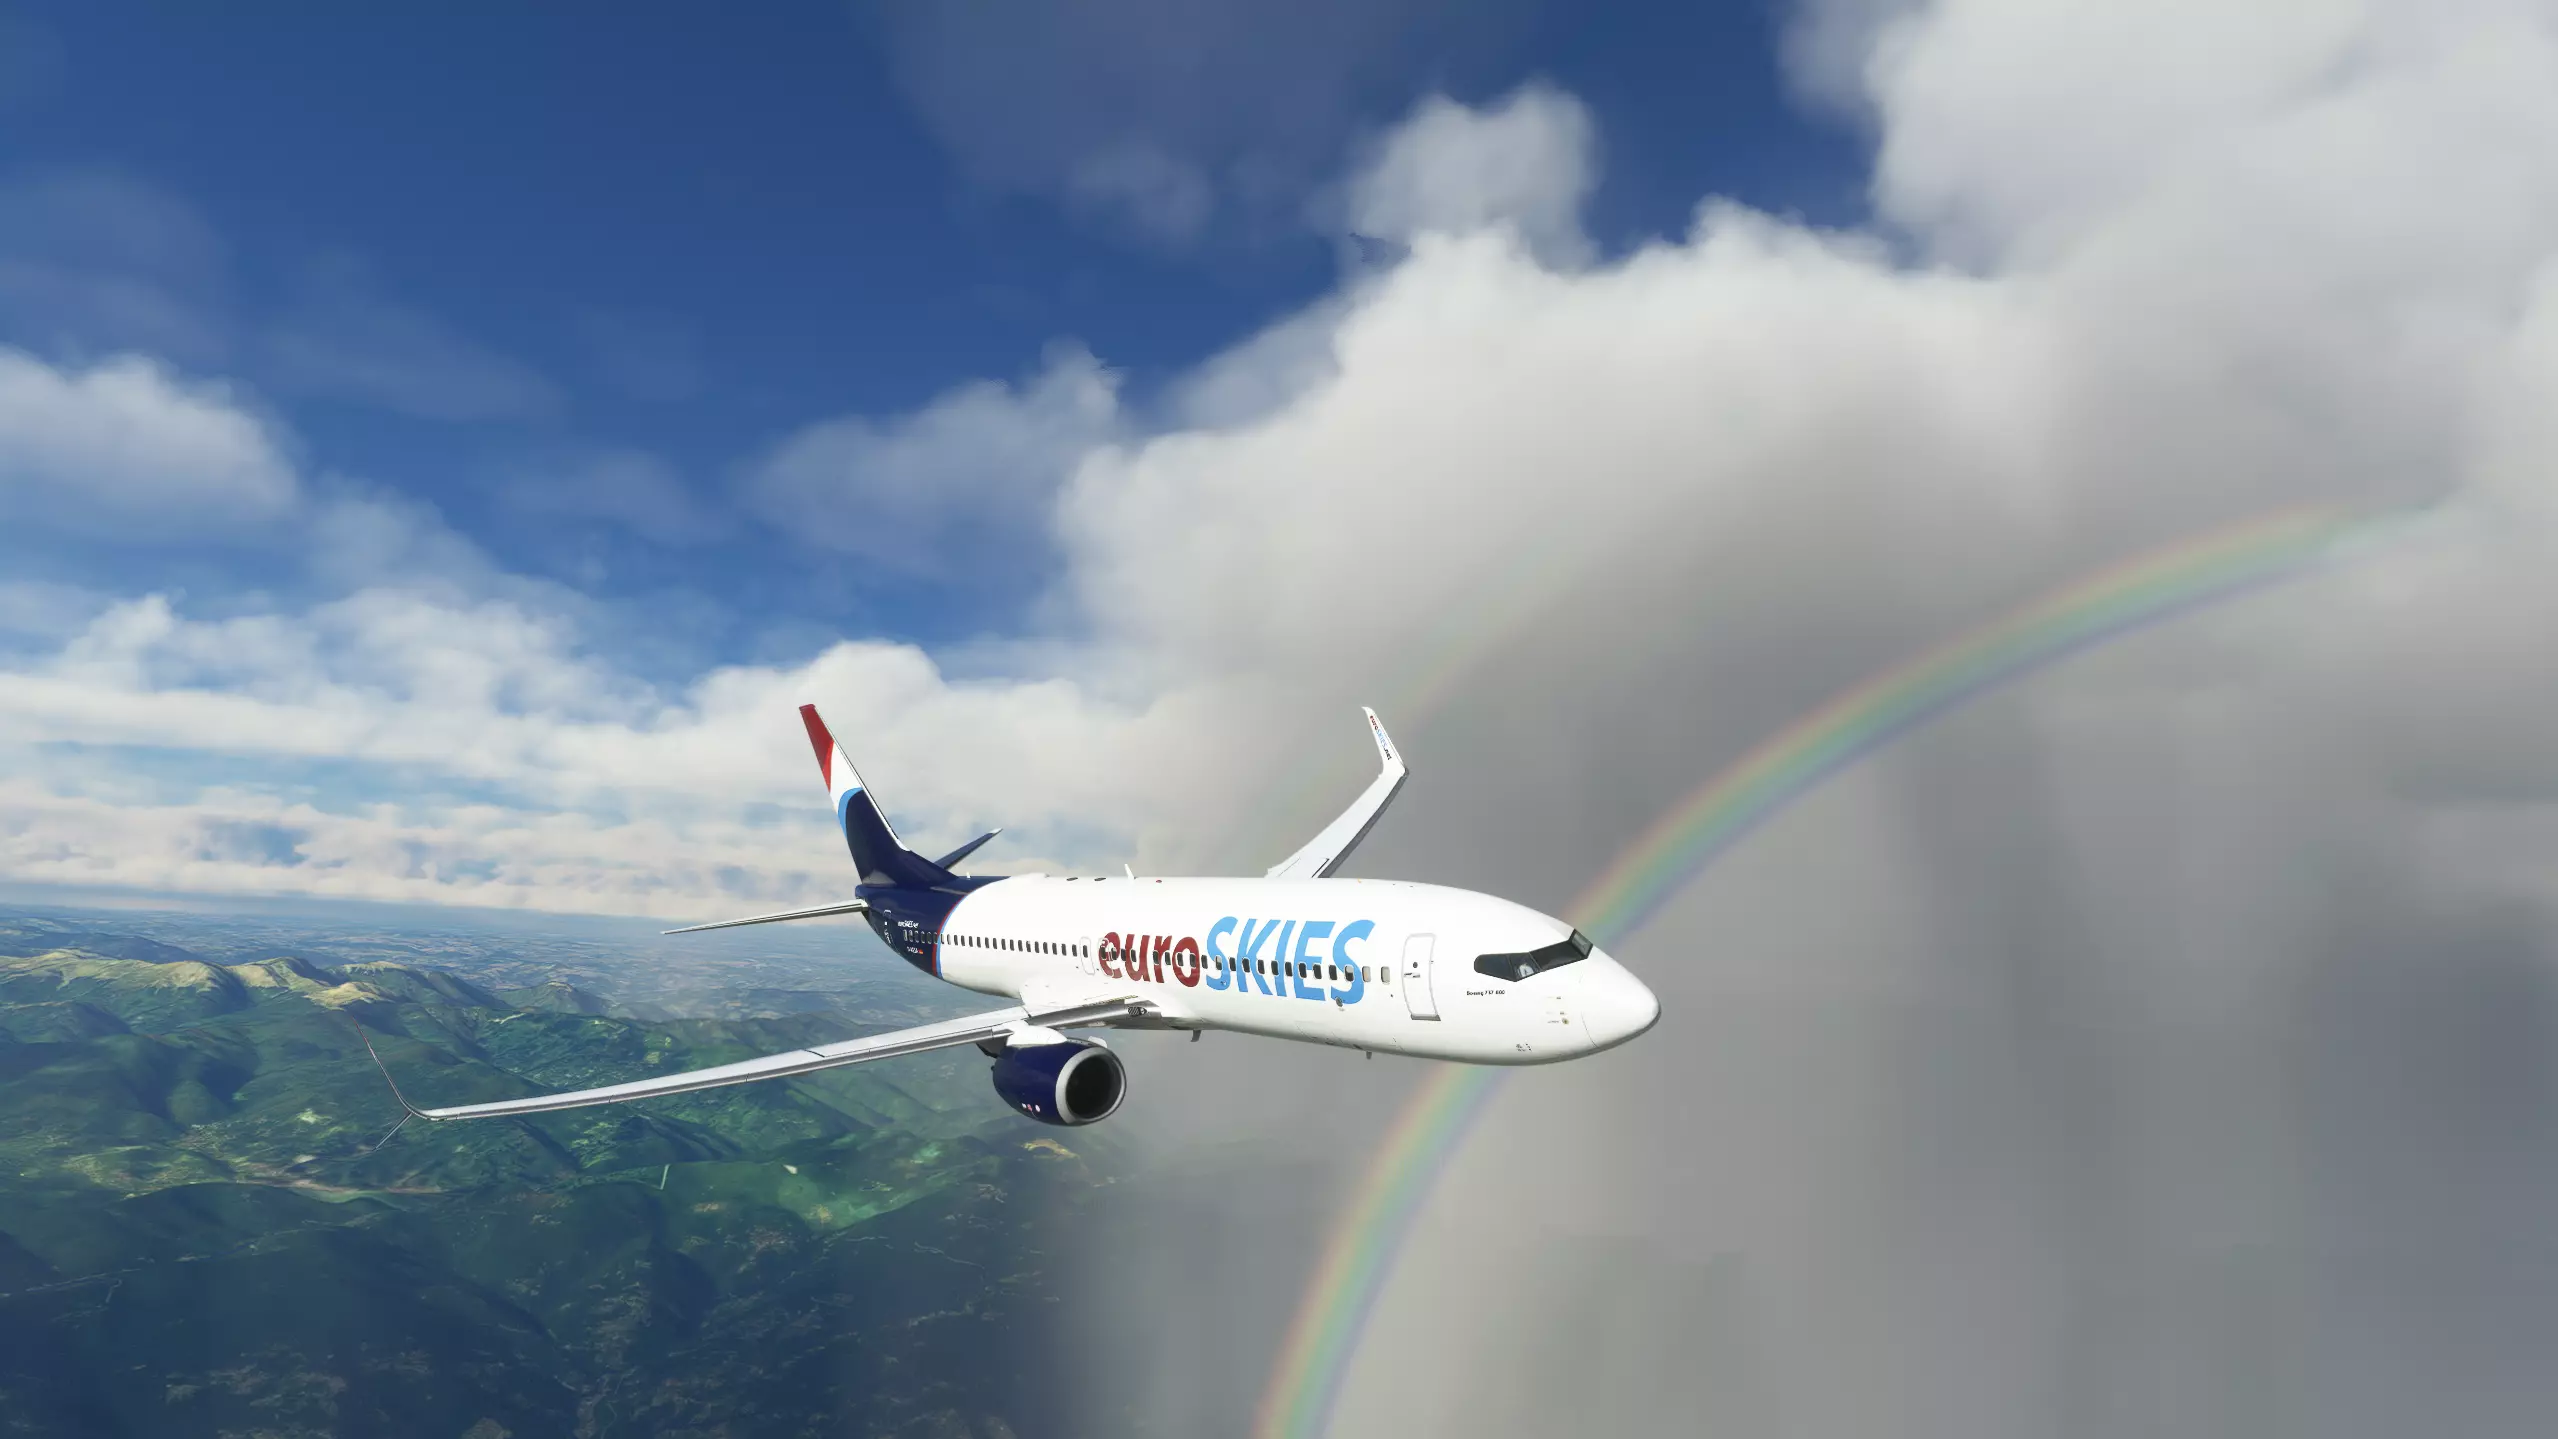 euroSKIES virtuelle Fluggesellschaft Boeing 737 im Fugbetrieb vor einem Regenbogen